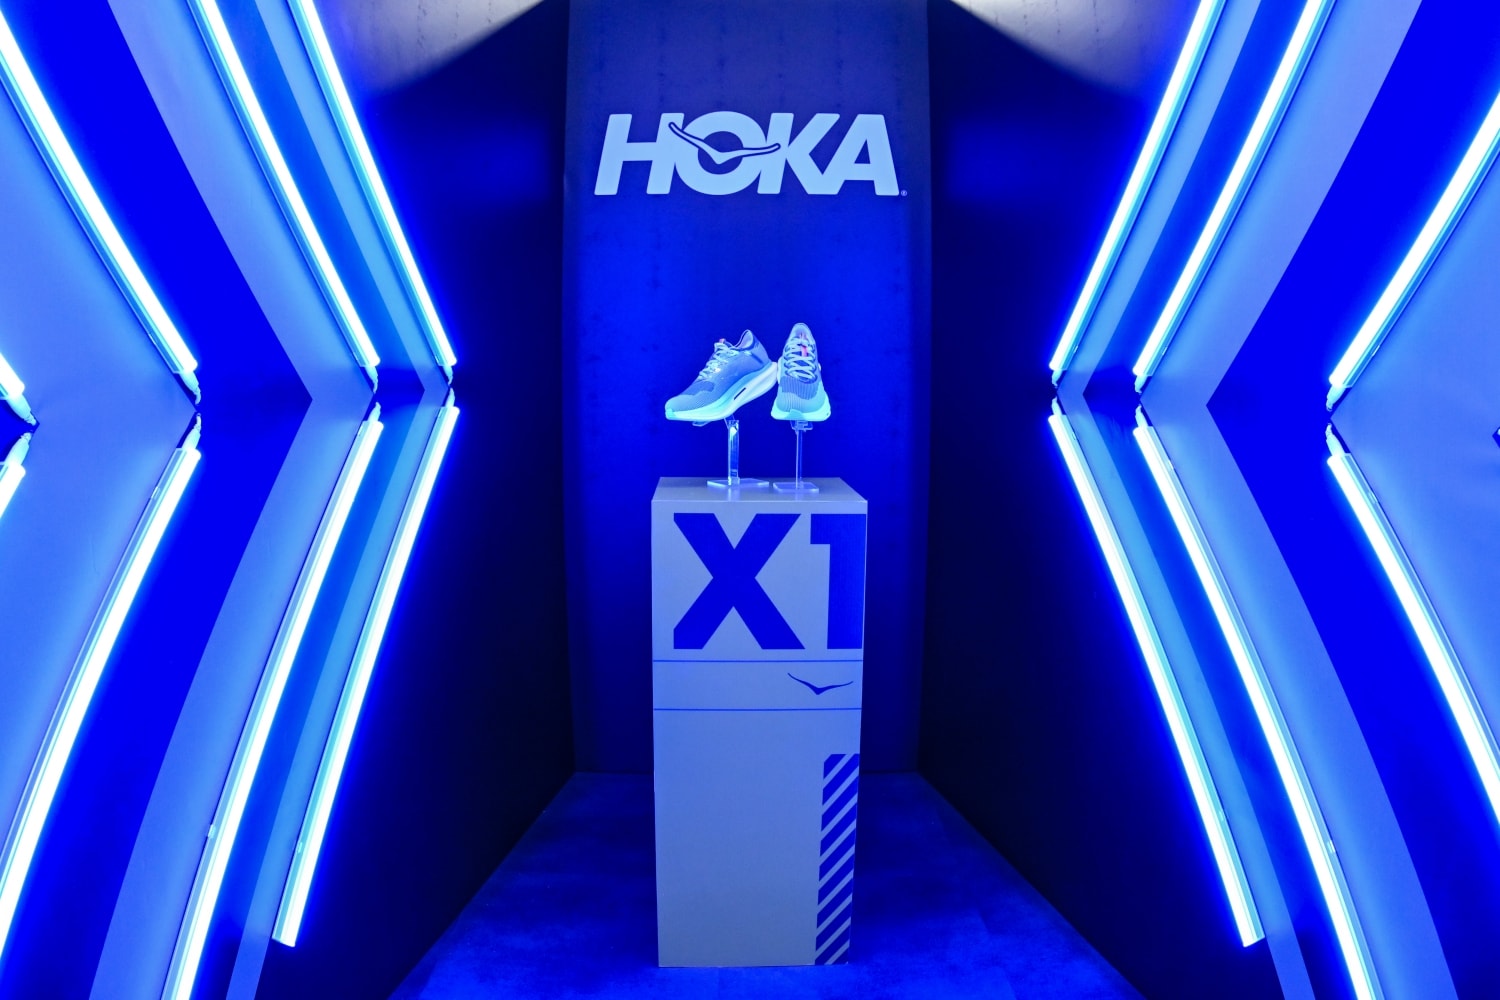 빠르고 역동적인 주행을 위한, 호카 레이싱 슈즈 ‘씨엘로 X1’ 출시 hoka racing shoes cielo x1 launching event